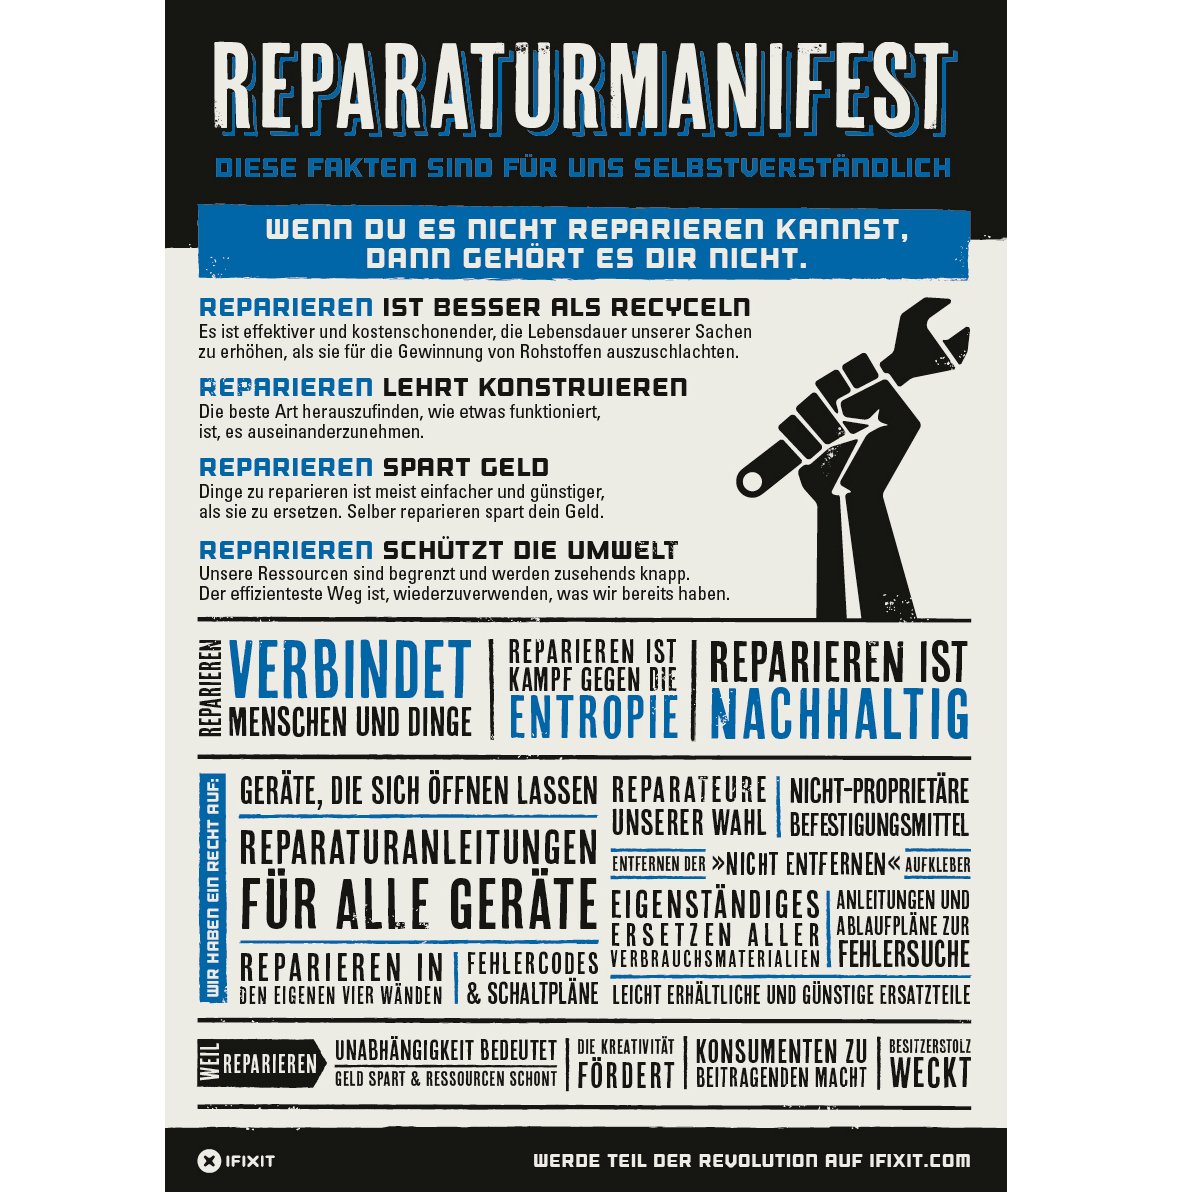 Self-Repair Manifesto